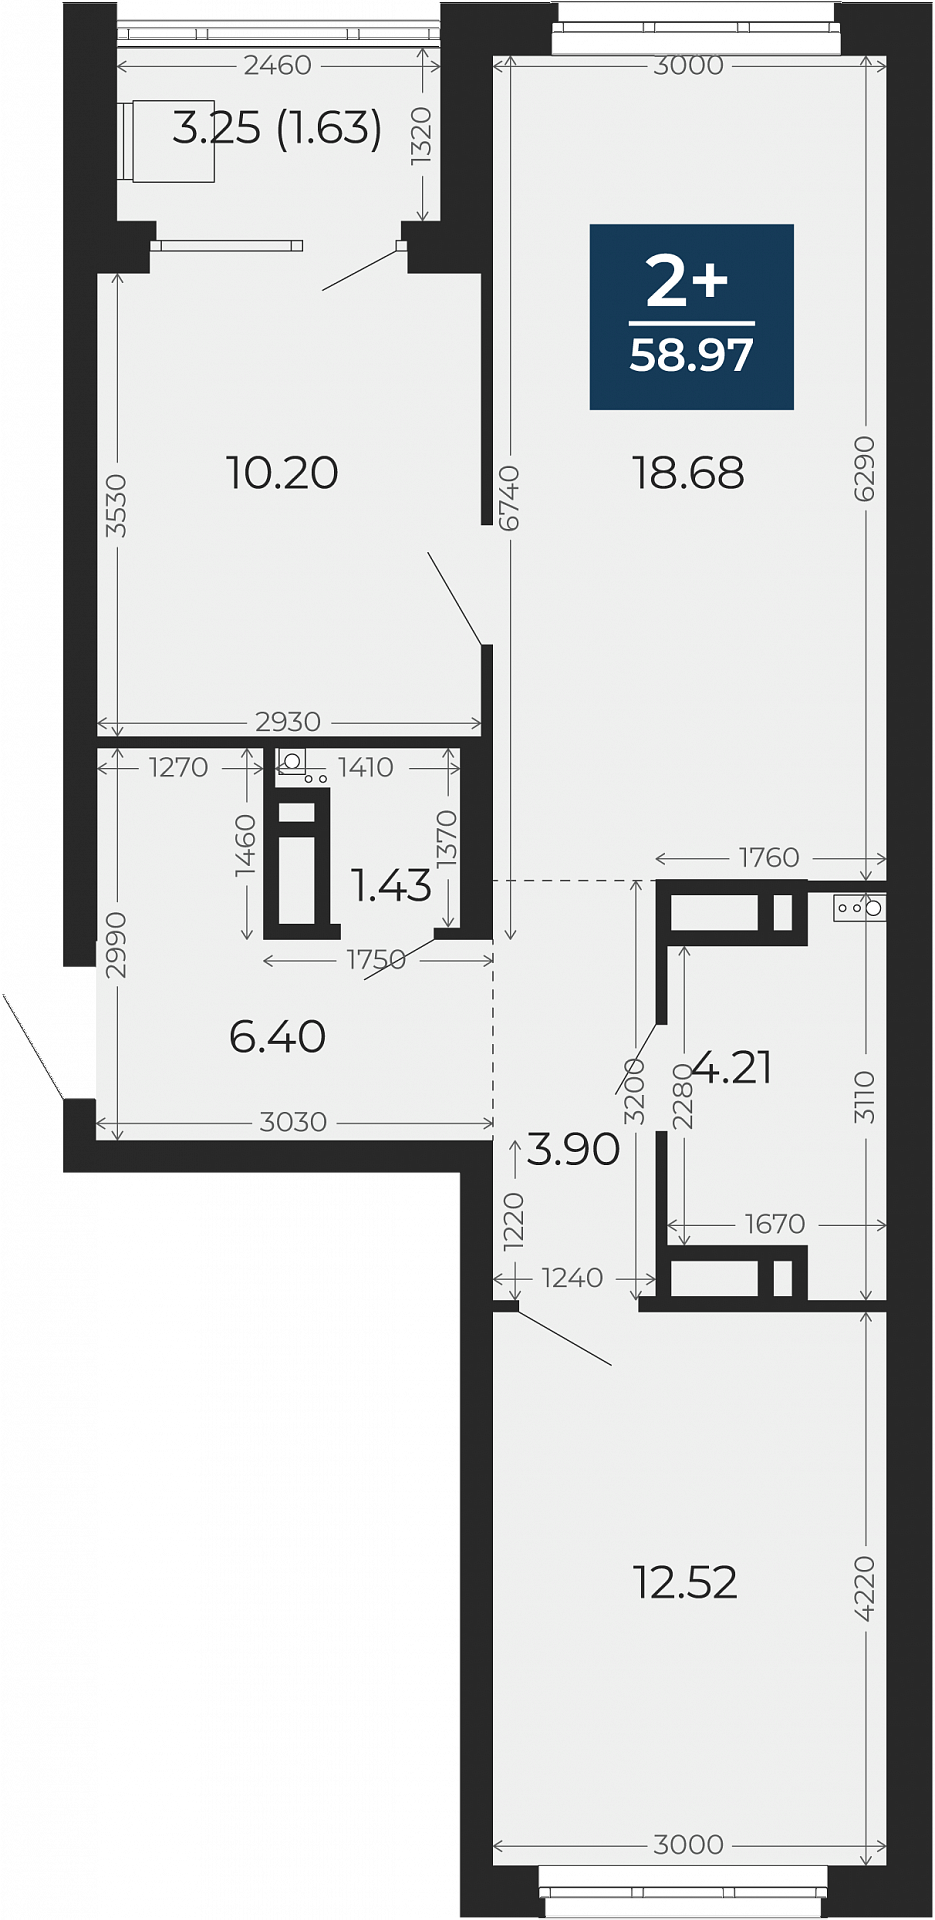 Квартира № 97, 2-комнатная, 58.97 кв. м, 9 этаж